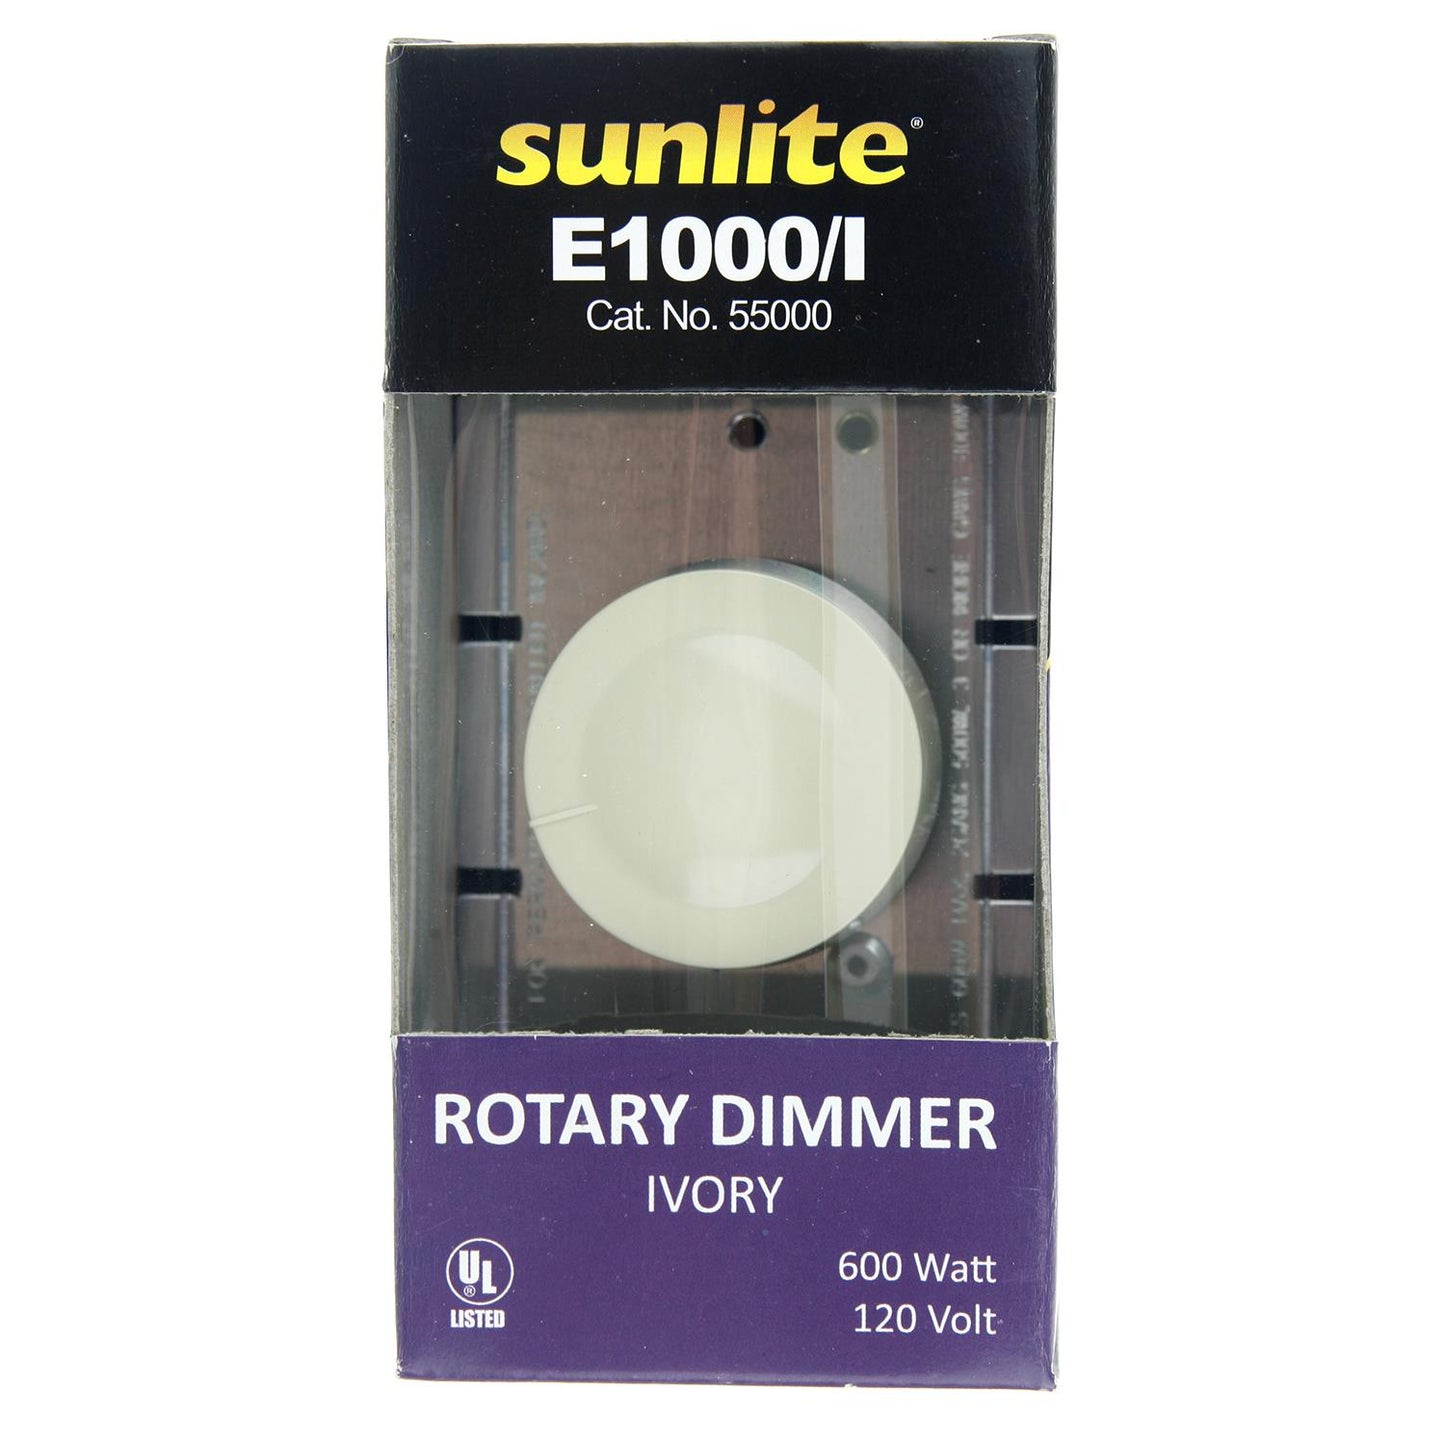 Sunlite E1000/I Rotary Dimmer, Ivory